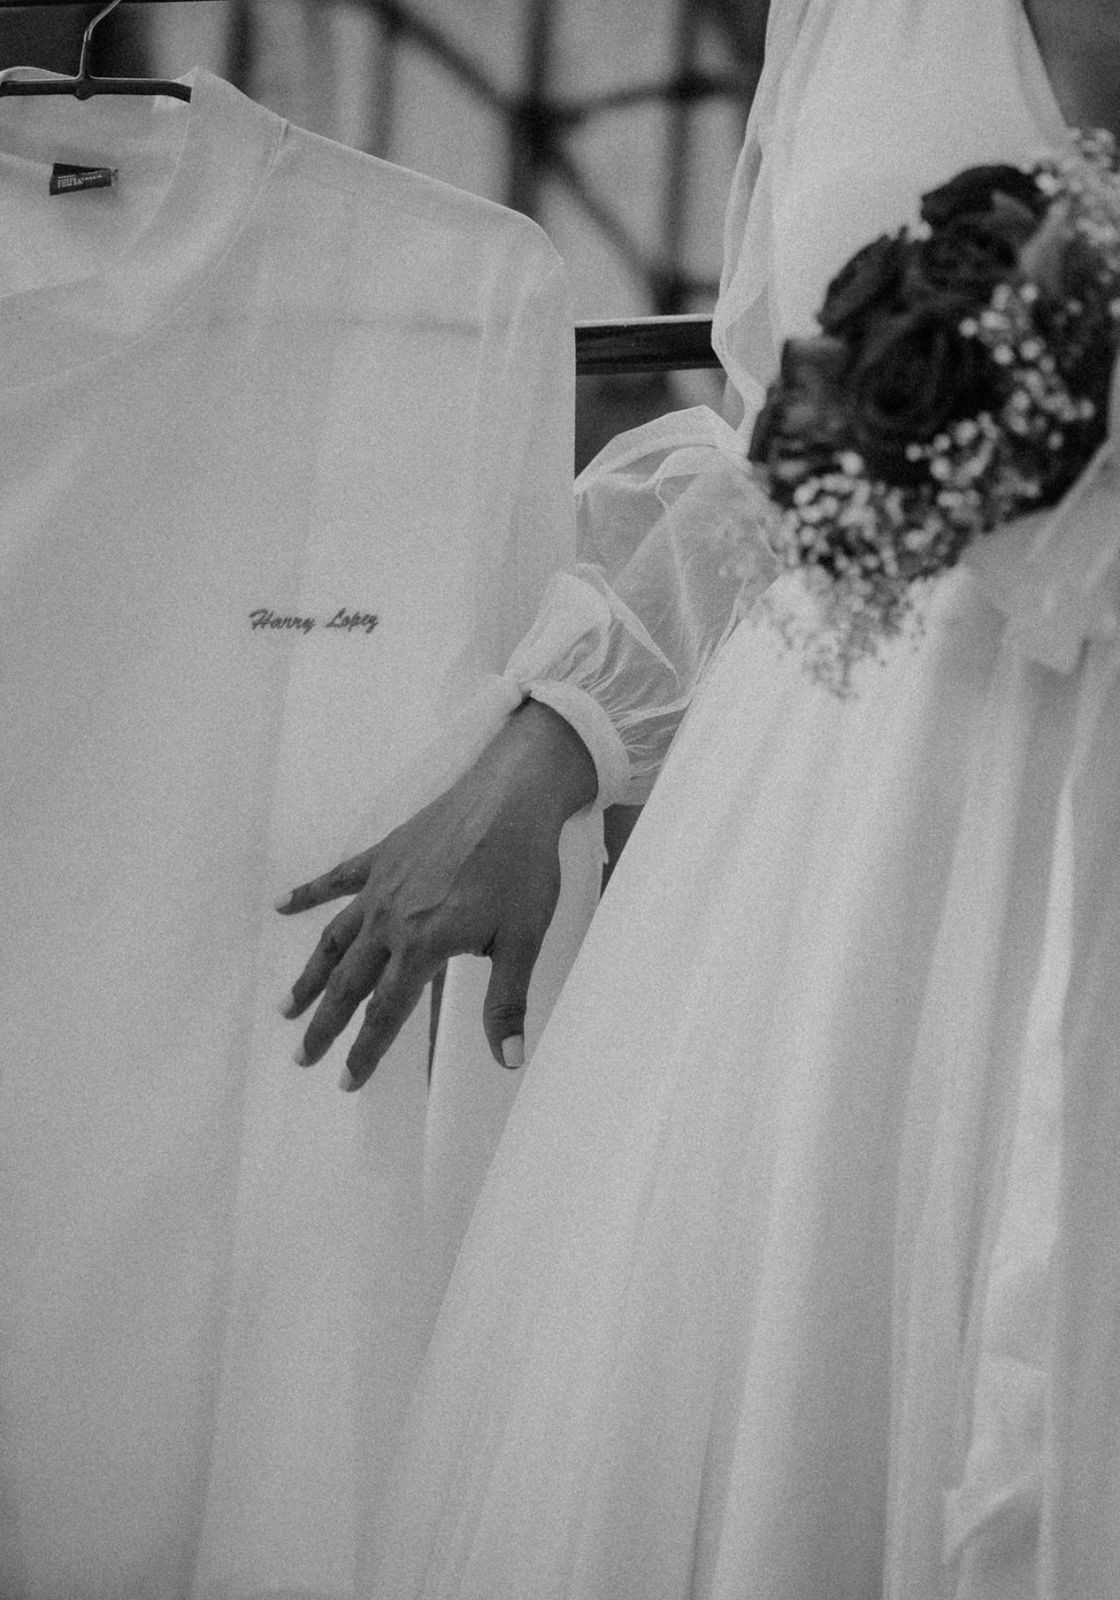 jornalista-faz-fotos-de-casamento-em-homenagem-ao-noivo-que-morreu-um-mes-antes-da-cerimonia:-‘prometi-realizar-nossos-sonhos’